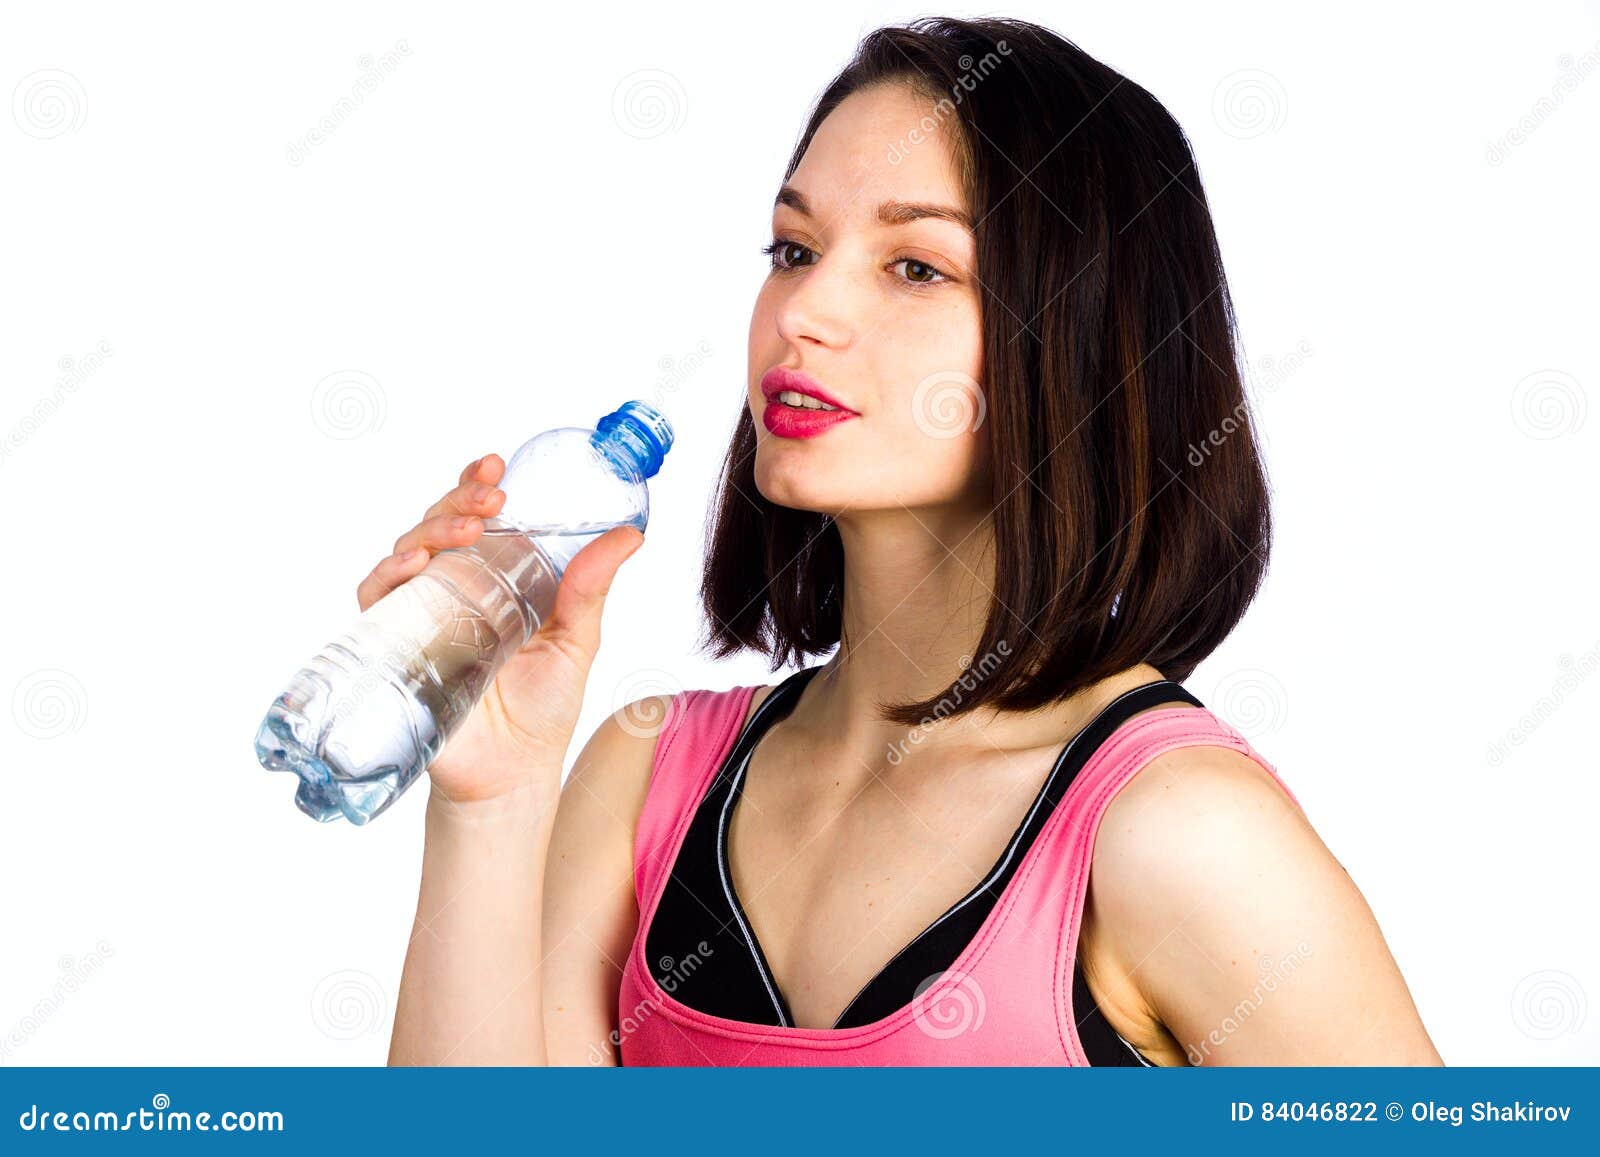 Янг девушка. Девушка с бутылкой воды на белом фоне. Спортивная девушка с бутылкой воды. Девушка с маленькой бутылочкой питьевой воды. Фото девушки с бутылём воды.